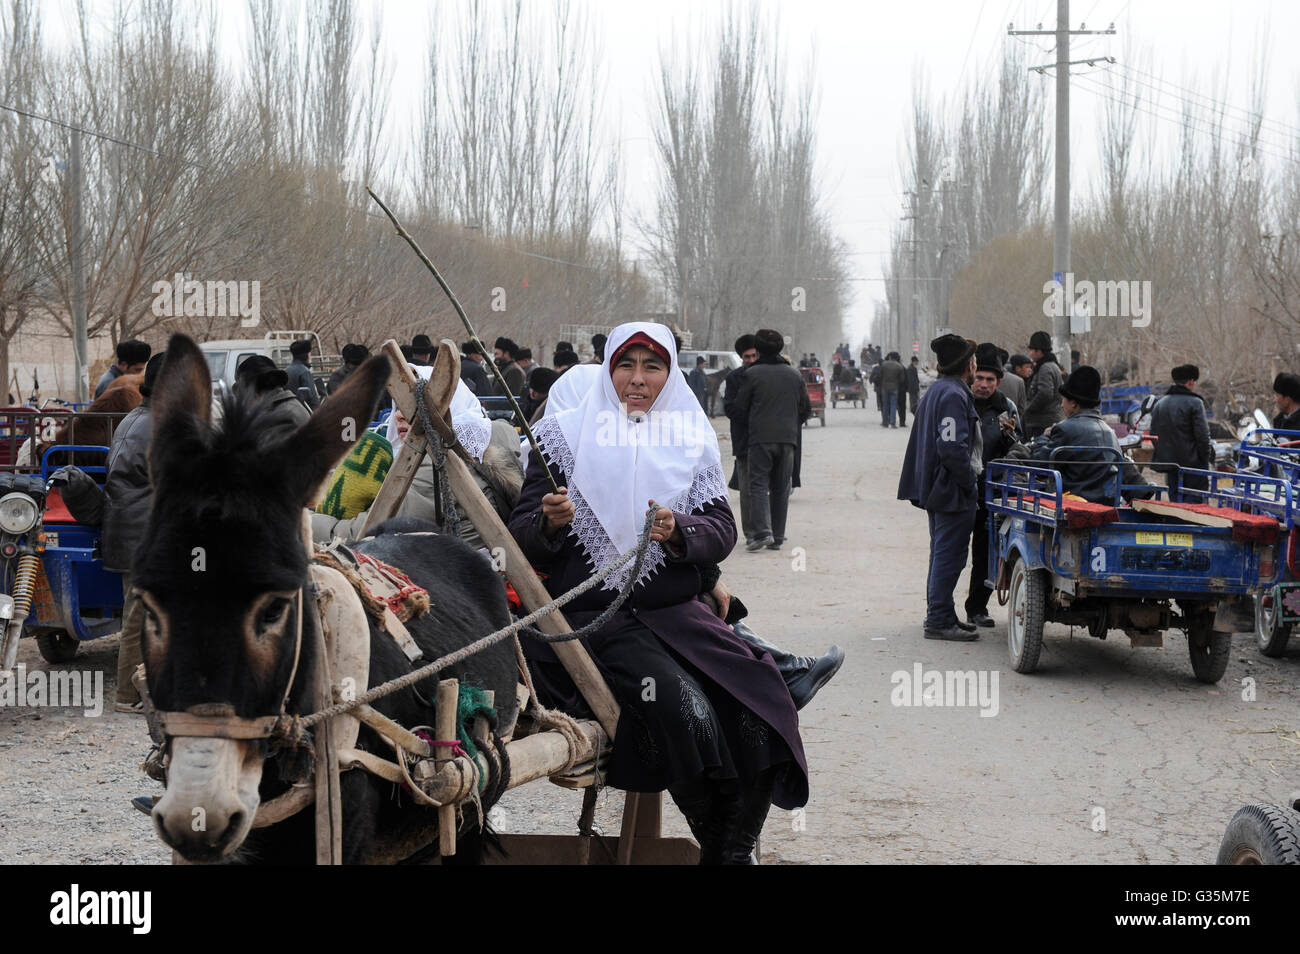 La provincia cinese dello Xinjiang, giorno di mercato nel villaggio di uighur Langar vicino a Kashgar / Cina Provinz Xinjiang, Markttag Langar in einem uigurischen Dorf bei Stadt Kashgar hier lebt das Turkvolk der Uiguren, das sich zum Islam bekennt Foto Stock